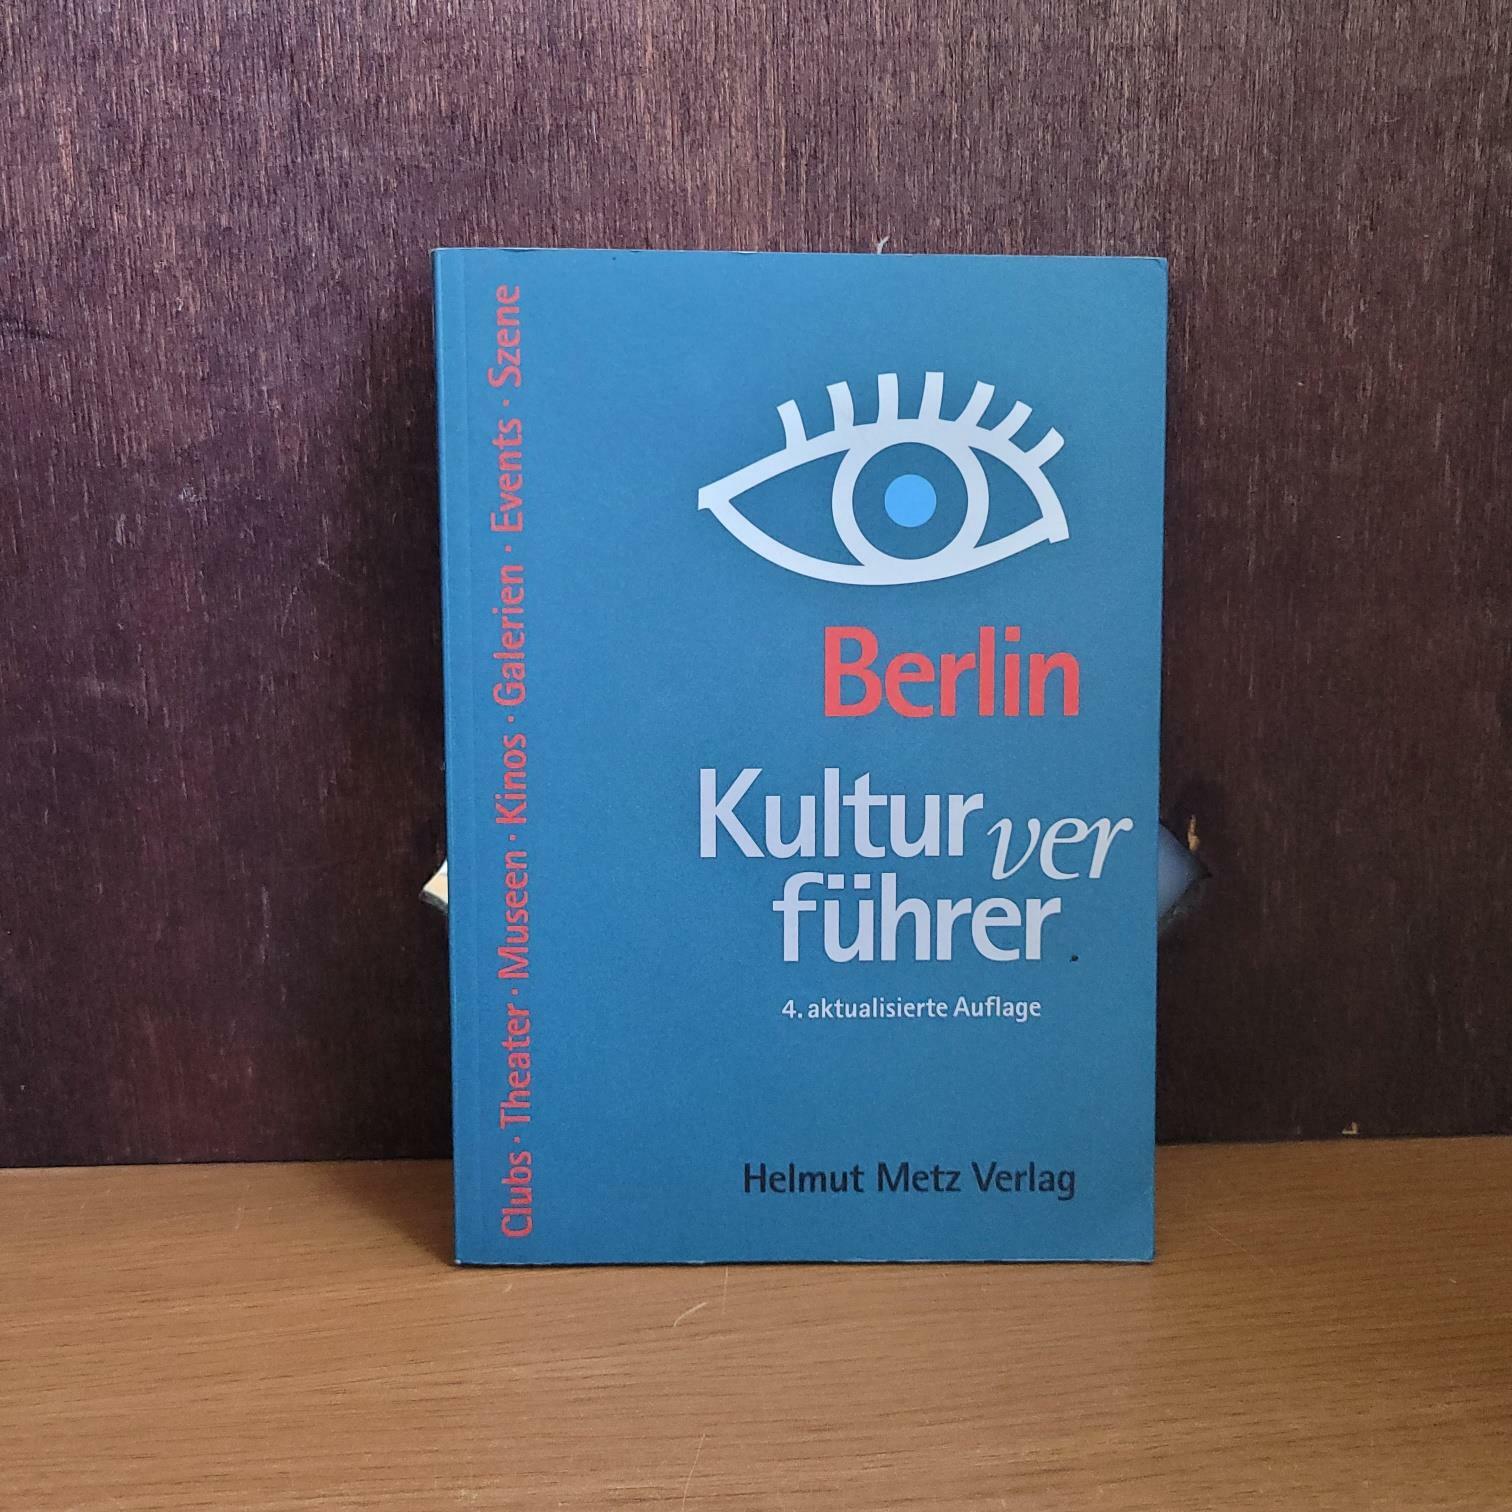 [중고] Helmut Metz) Rolf Hosfeld Kulturverführer Berlin [중급/실사진 참고] (paperback)